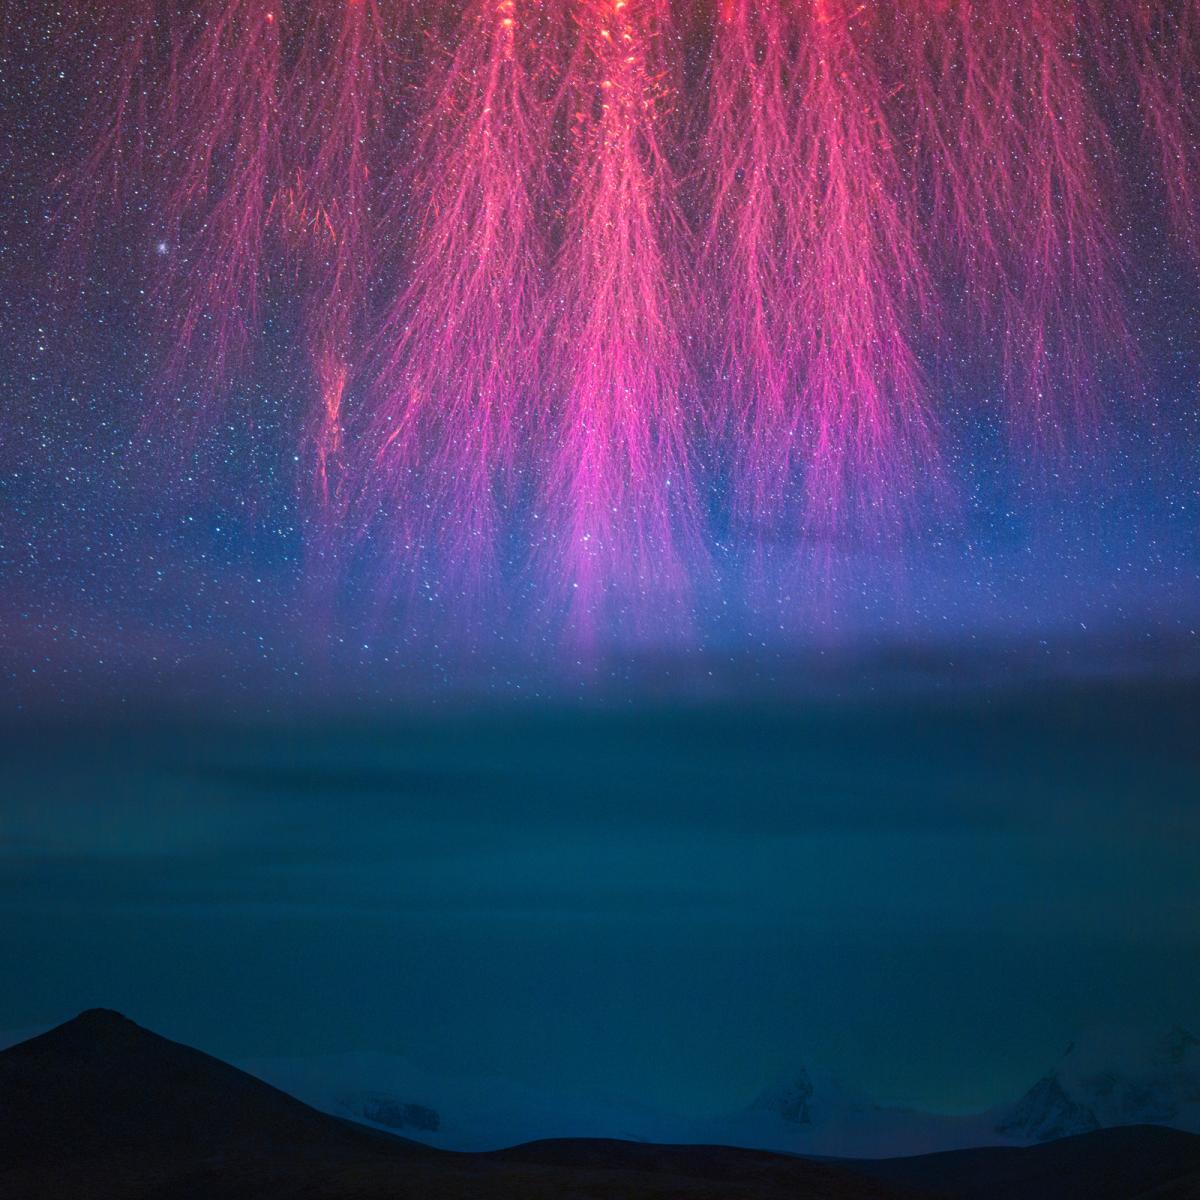 Imagen espacial con fuegos artificiales de color rosa sobre un fondo azul con estrellas